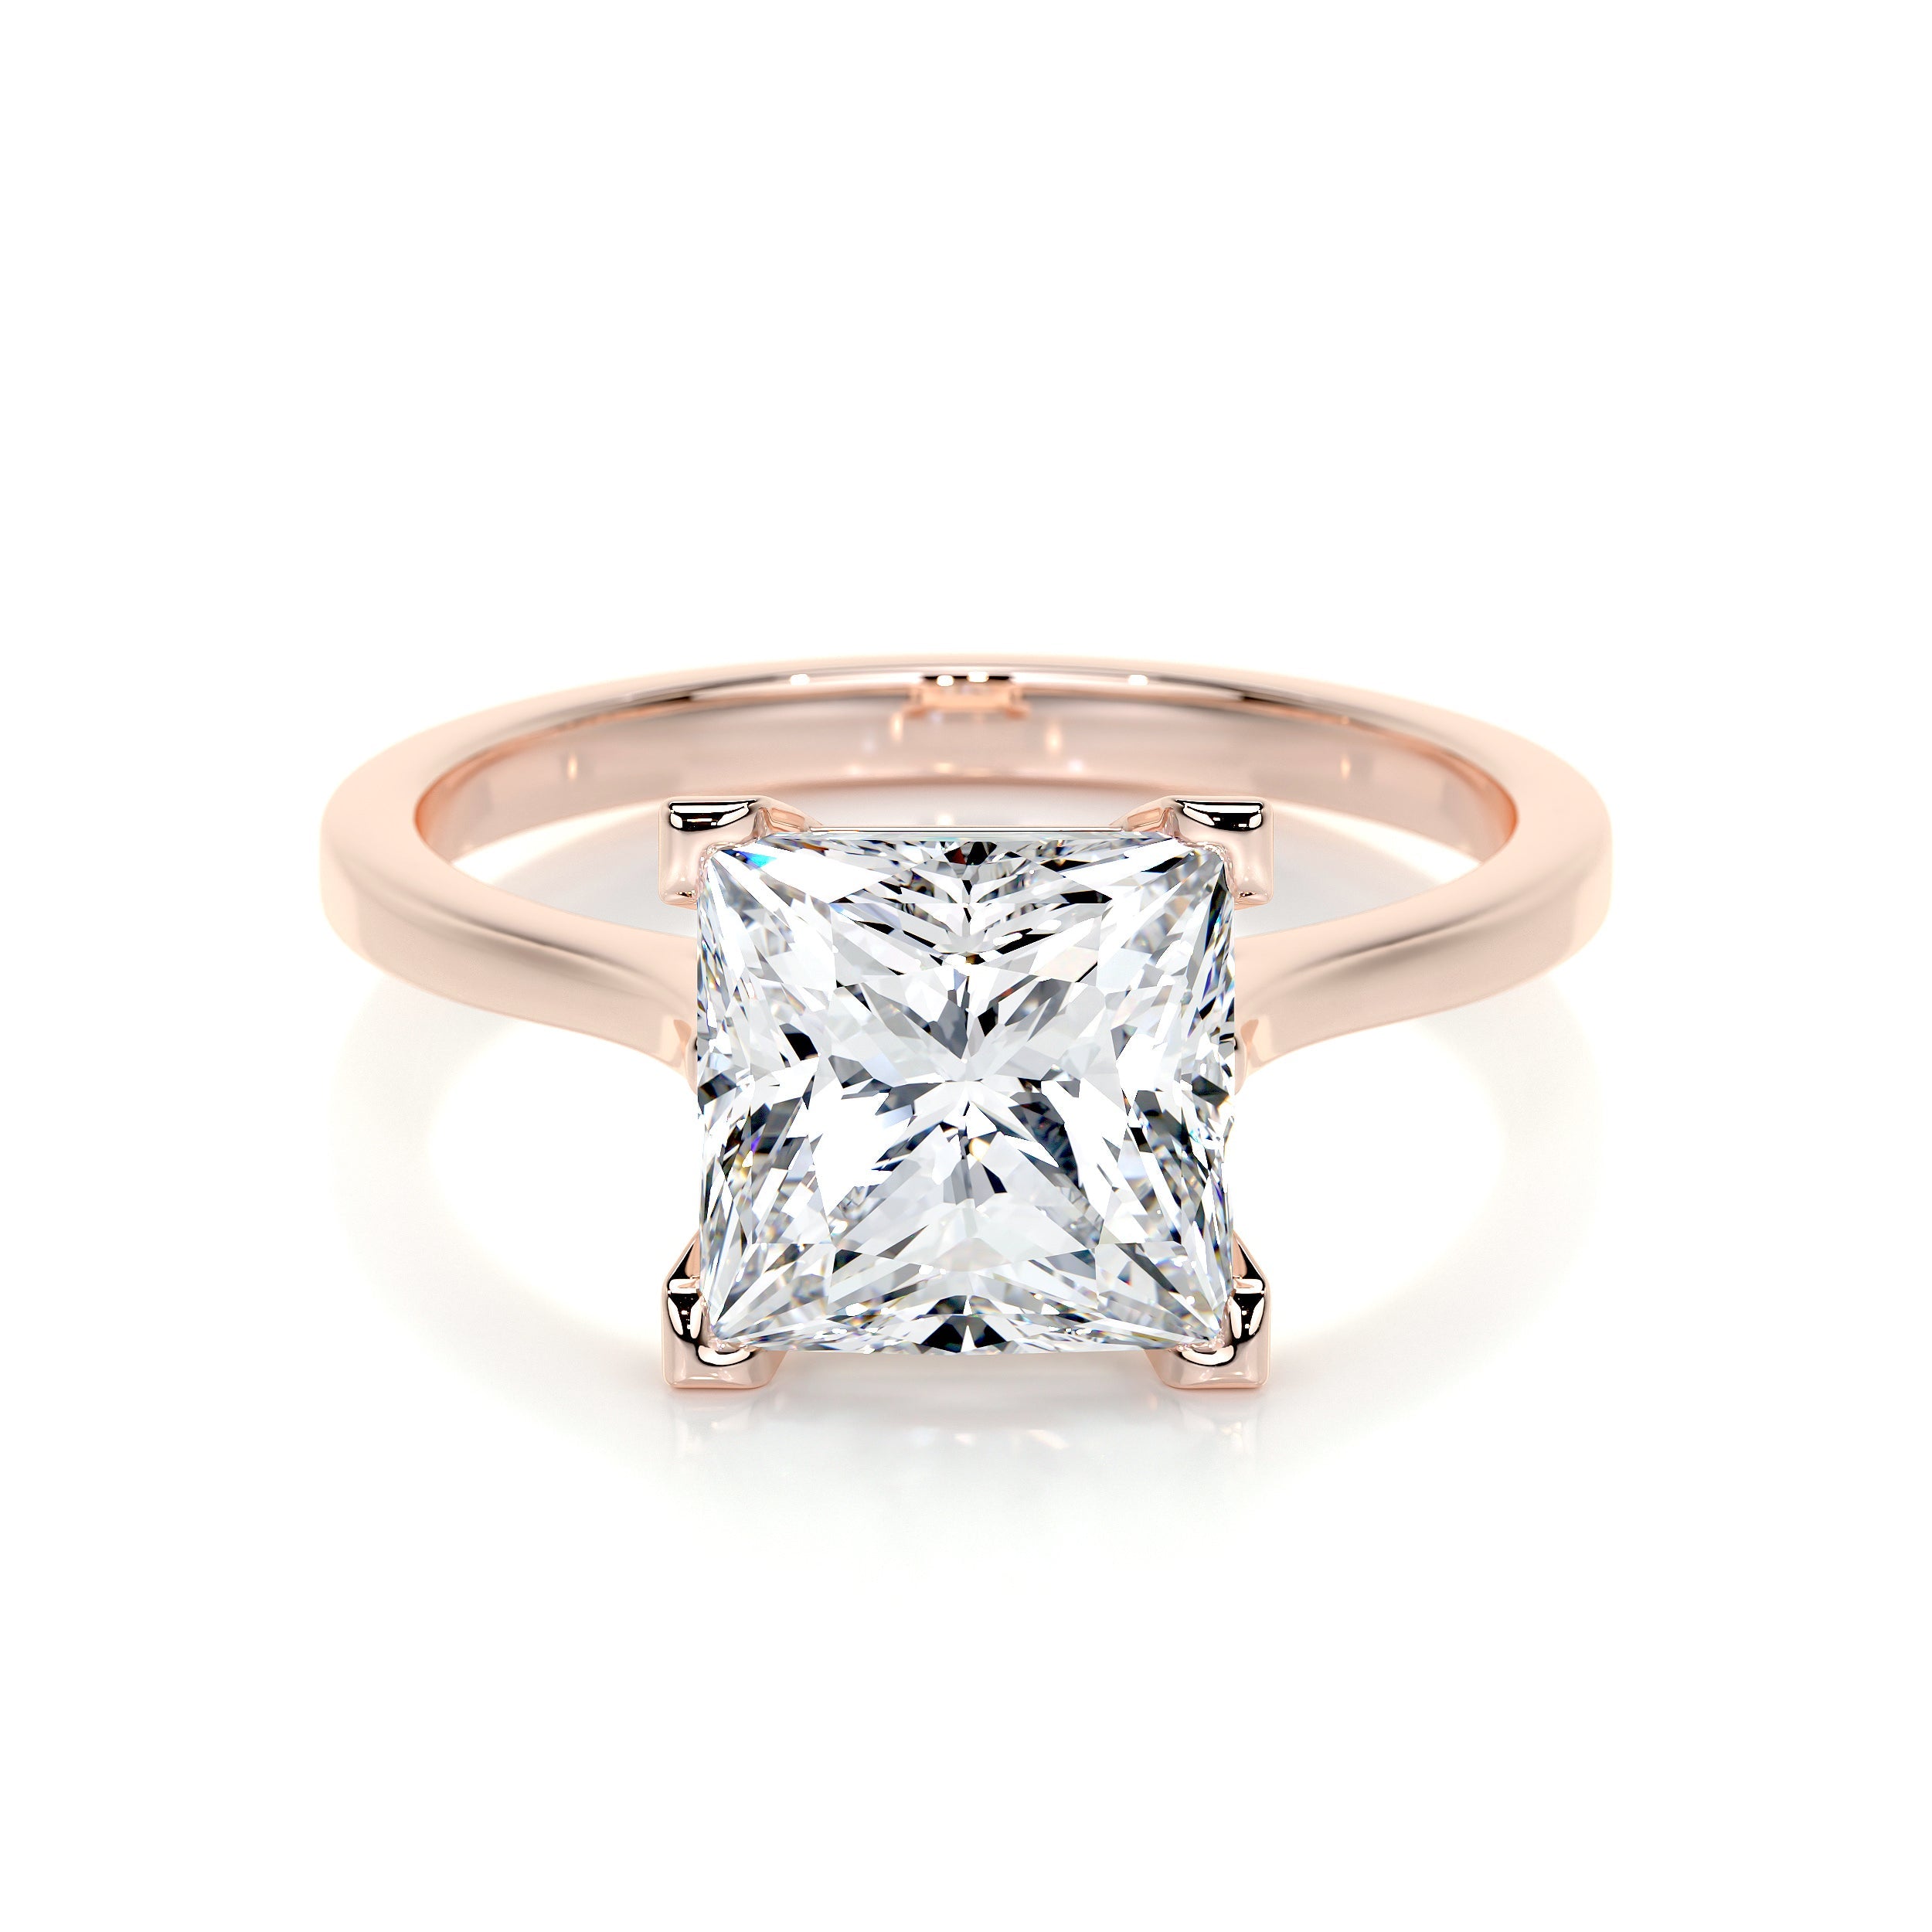 Ella Lab Grown Diamond Ring   (3 Carat) -14K Rose Gold